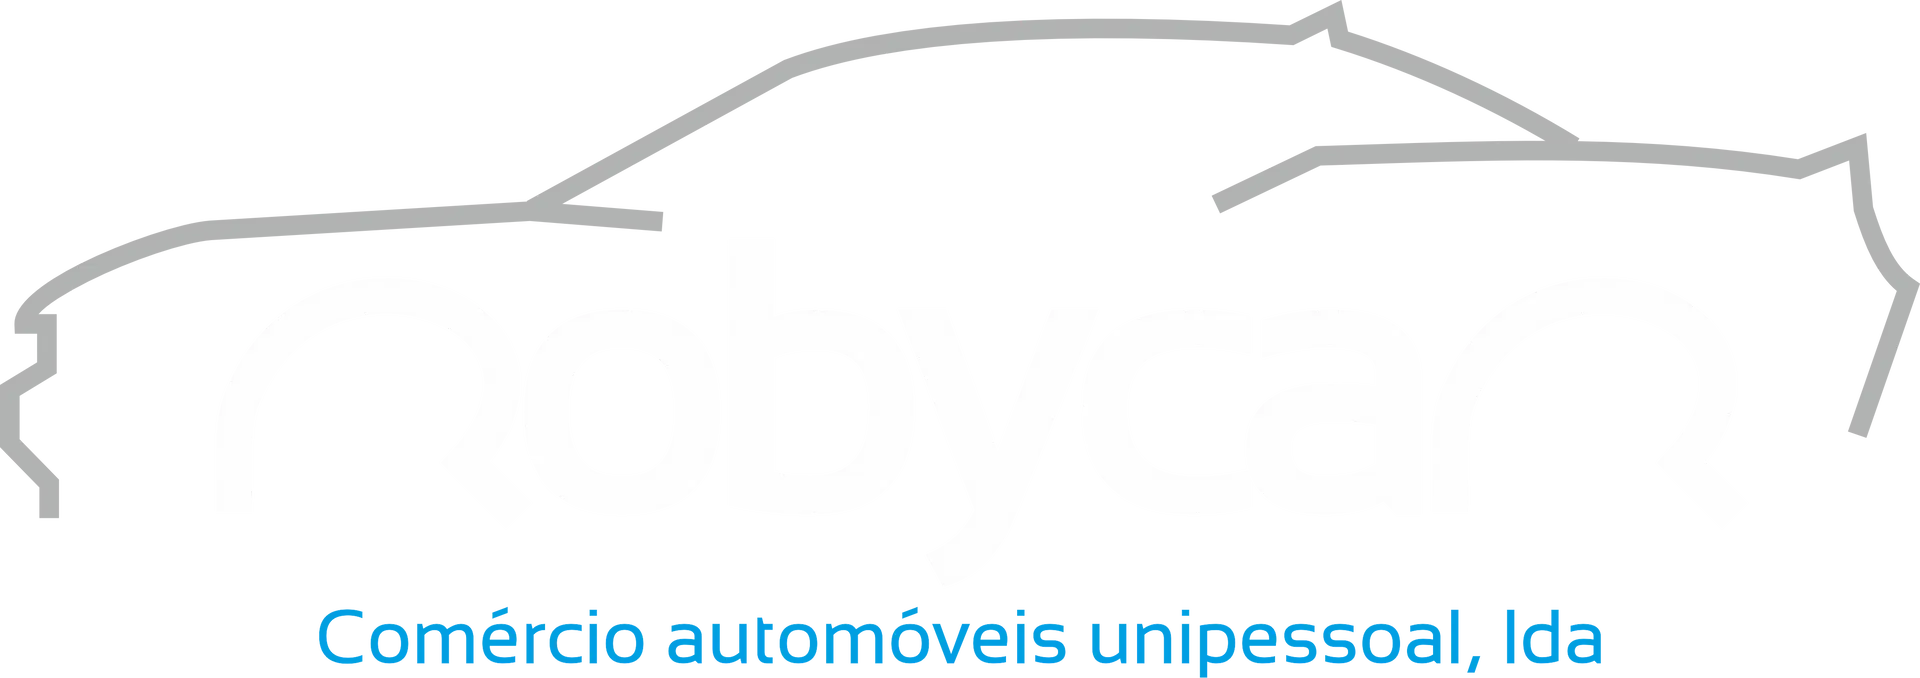 Robycar.pt logo - Início